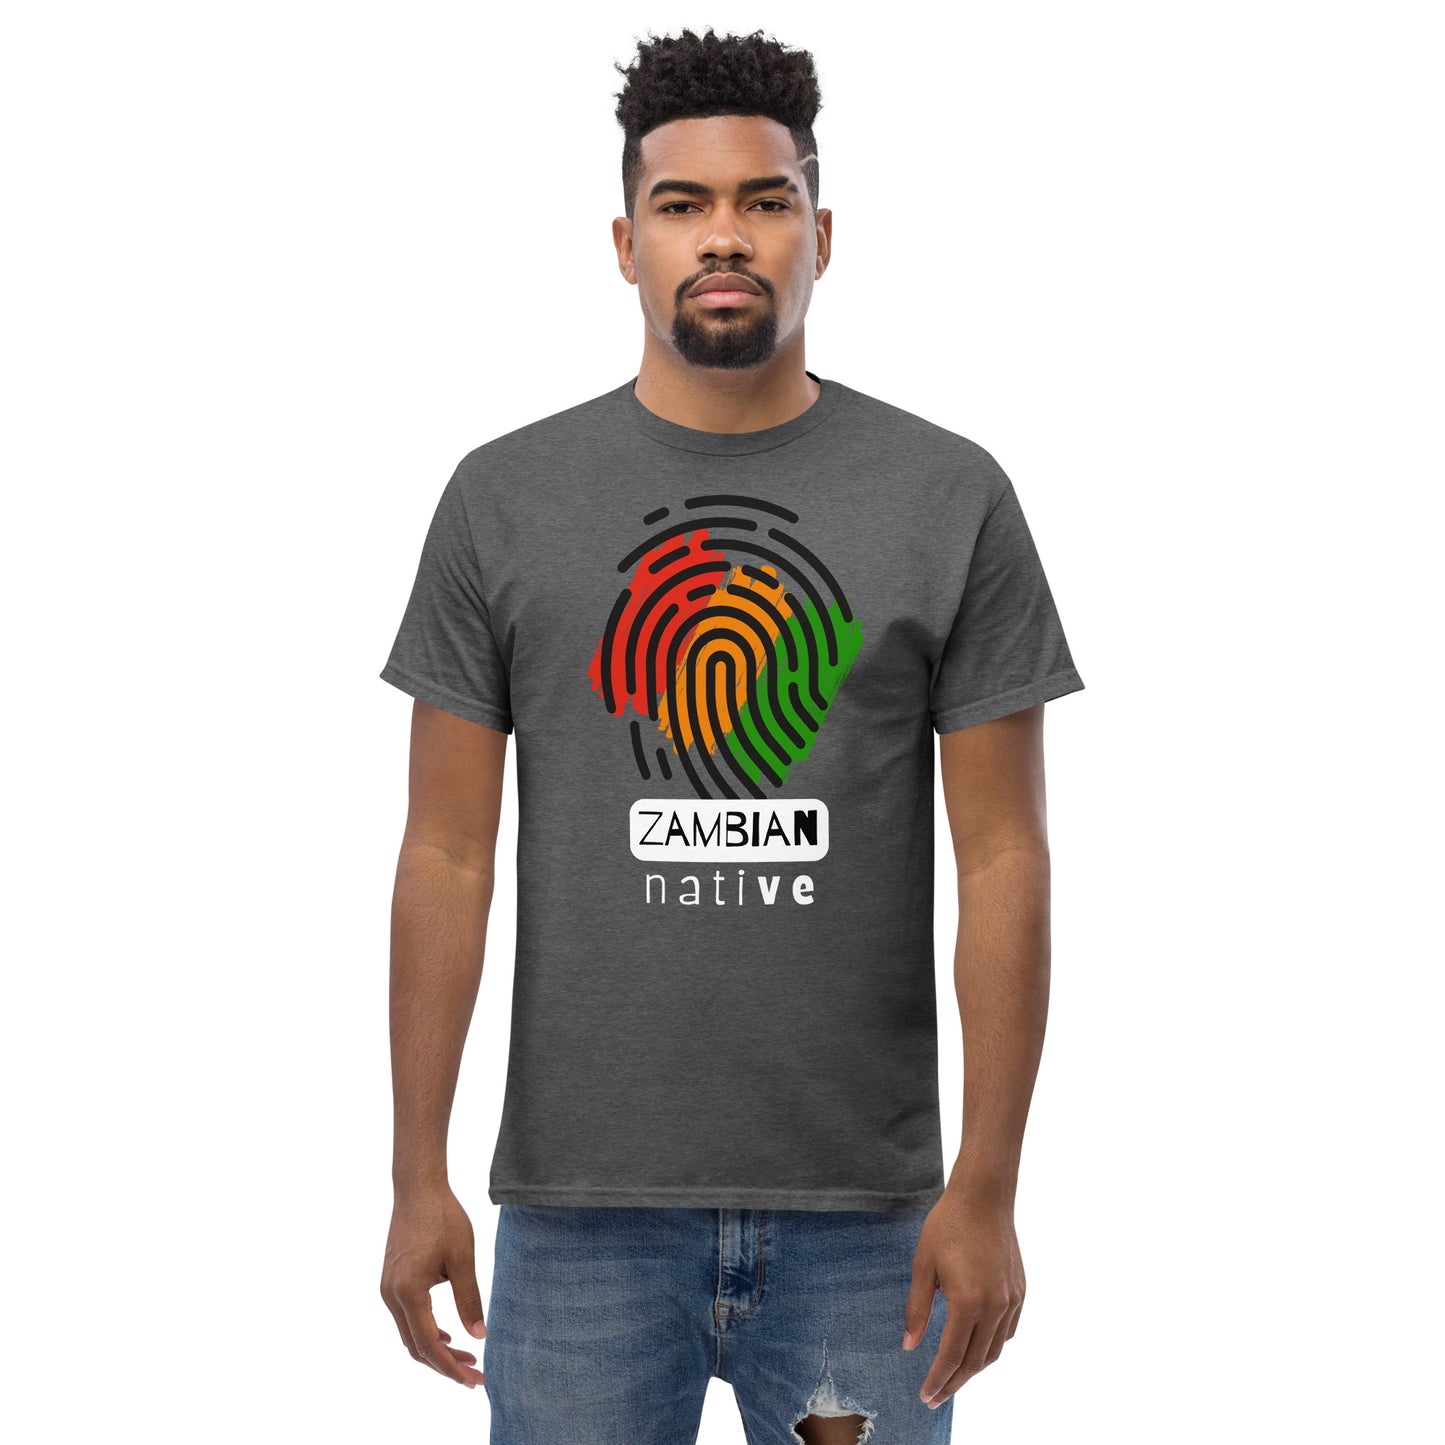 Men's classic Zambian Native t shirt